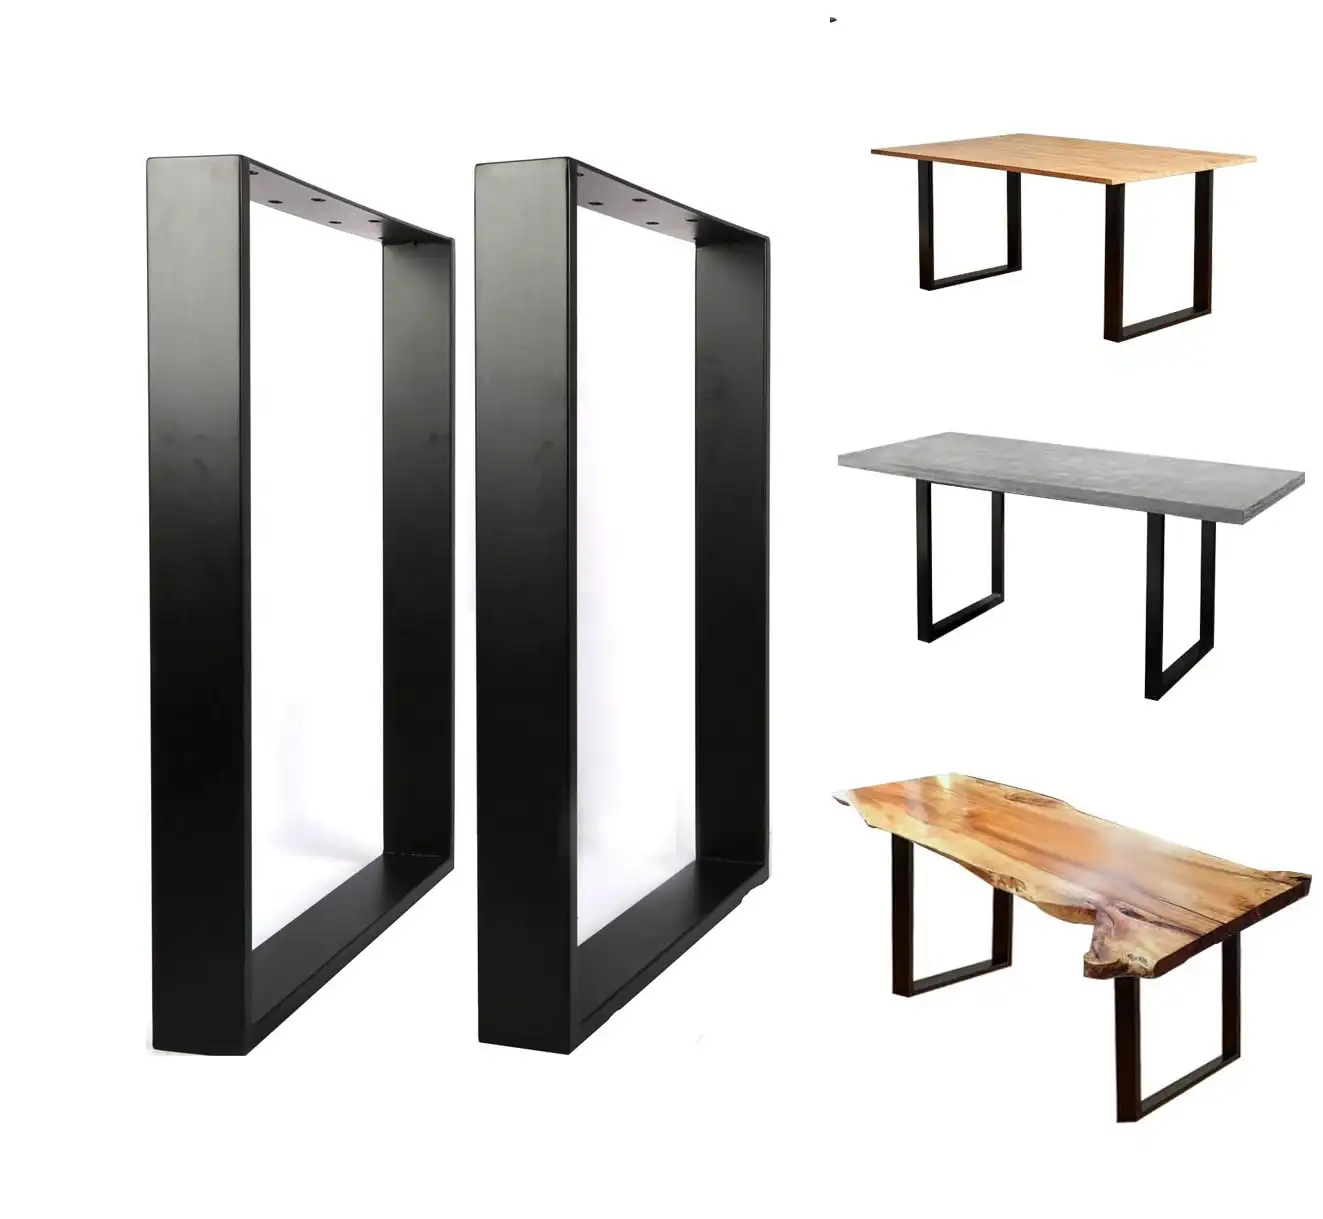 Tabelle Bein Rahmen Restaurant Unterstützung Schreibtisch Füße Großhandel Möbel Industrie Büro gusseisen Esszimmer Stahl Kaffee Metall Tisch Bein